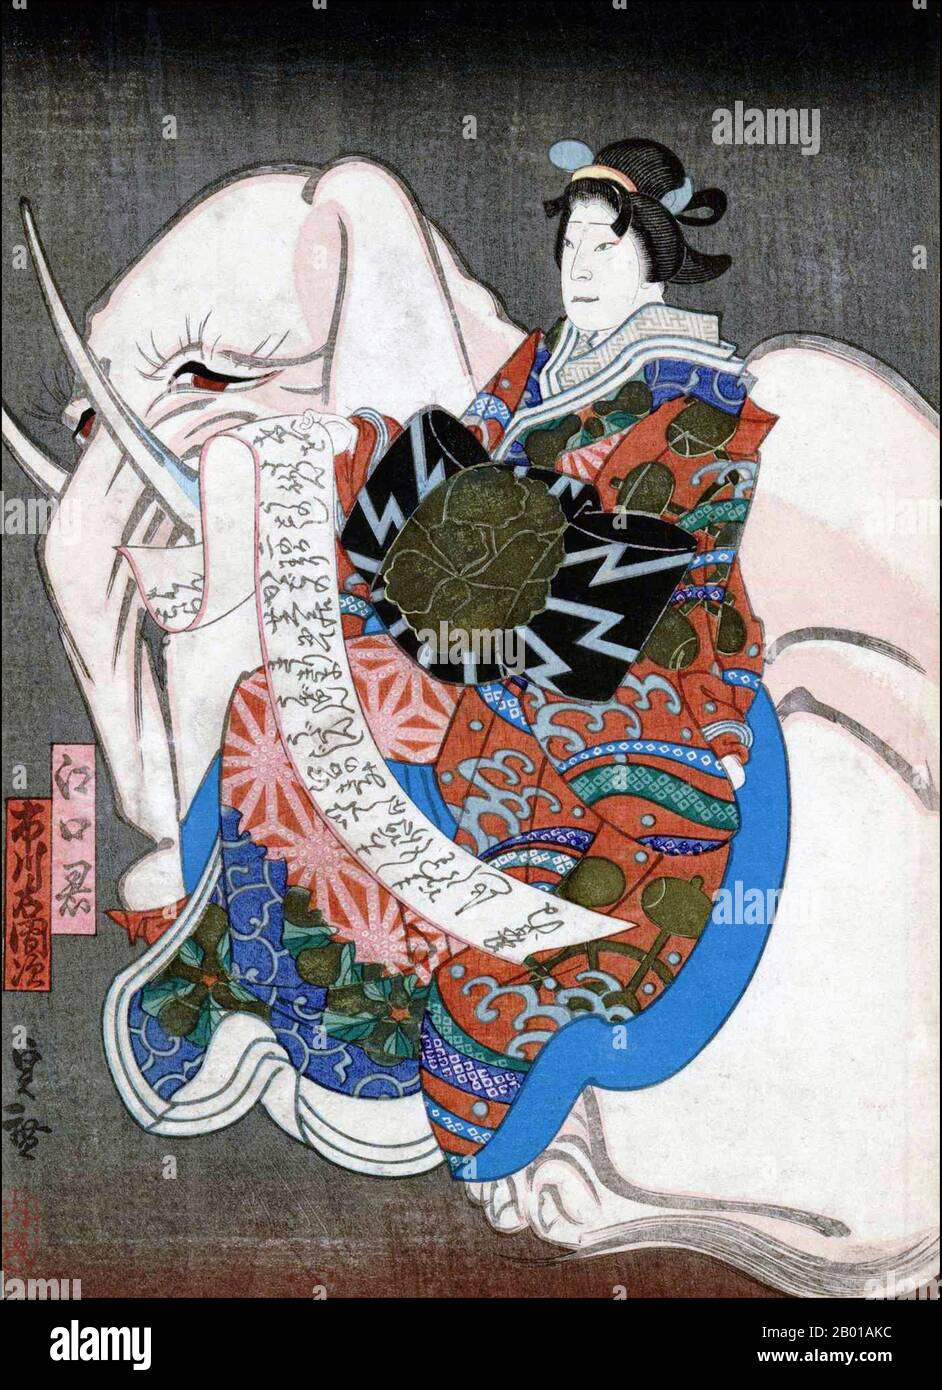 Japan: Eguchi no Kimi sitzt auf einem Elefanten, der Bodhisattva Fugen repräsentiert. Ukiyo-e Holzschnitt von Utagawa Sadahiro (fl. 1825-1875), 1850. Die Utagawa-Schule war eine Gruppe japanischer Holzschnitt-Künstler, die von Toyoharu gegründet wurde. Sein Schüler, Toyokuni I, übernahm nach Toyoharus Tod die Macht und erhob die Gruppe für den Rest des 19.. Jahrhunderts zur berühmtesten und mächtigsten Holzschnitt-Schule. Hiroshige, Kunisada, Kuniyoshi und Yoshitoshi waren Utagawa-Studenten. Die Schule wurde so erfolgreich und bekannt, dass heute mehr als die Hälfte aller erhaltenen Ukiyo-e-Drucke davon stammen. Stockfoto